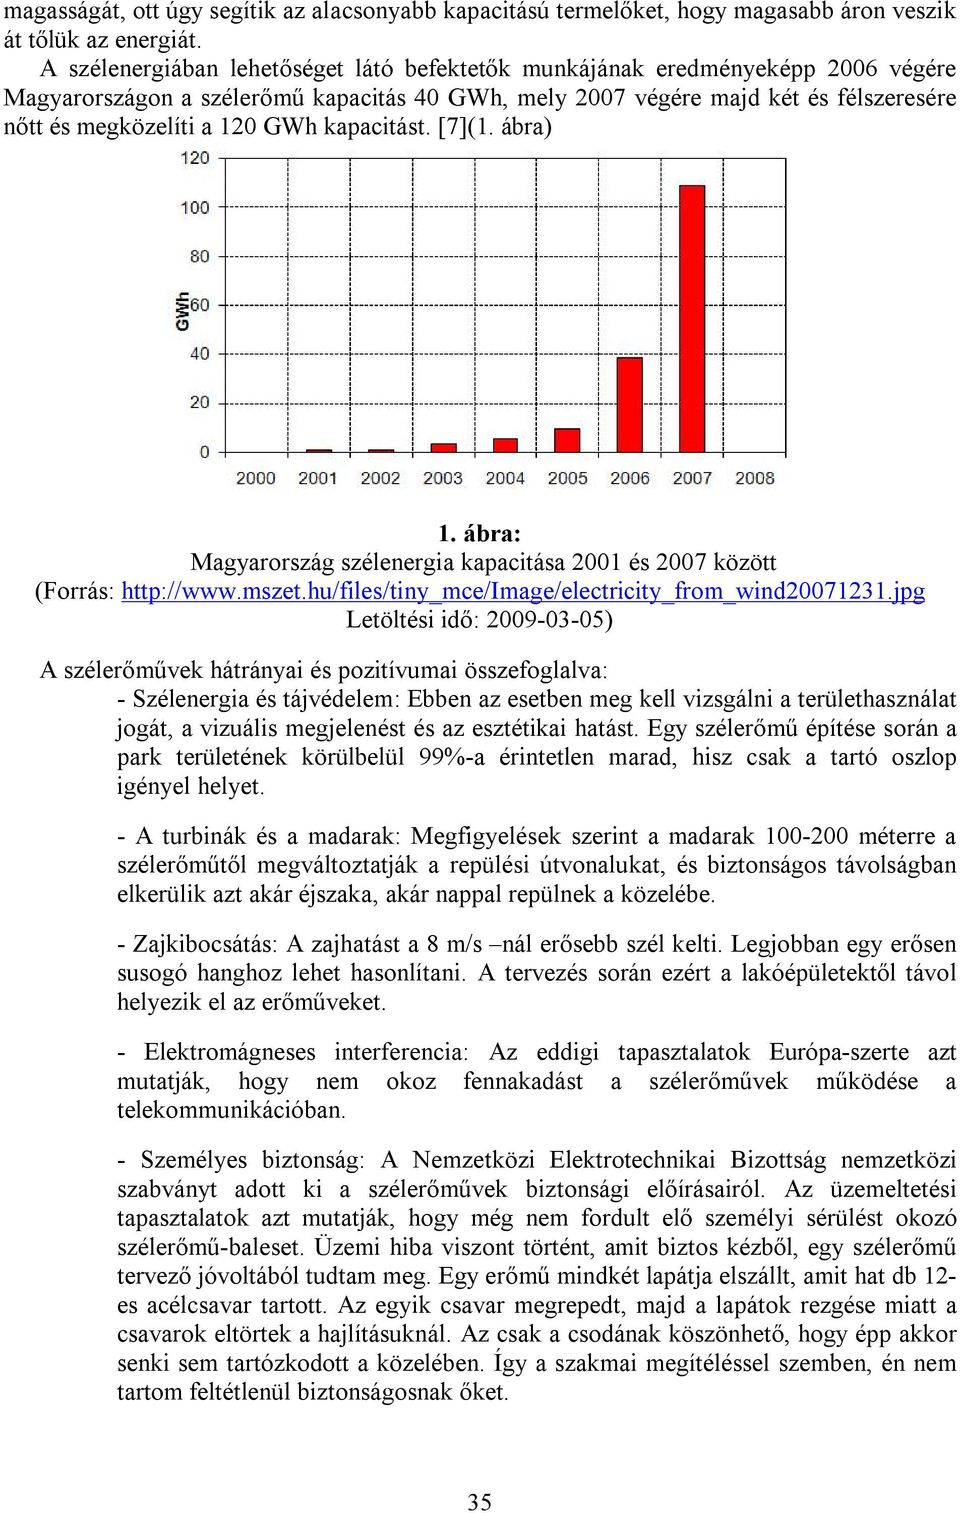 kapacitást. [7](1. ábra) 1. ábra: Magyarország szélenergia kapacitása 2001 és 2007 között (Forrás: http://www.mszet.hu/files/tiny_mce/image/electricity_from_wind20071231.